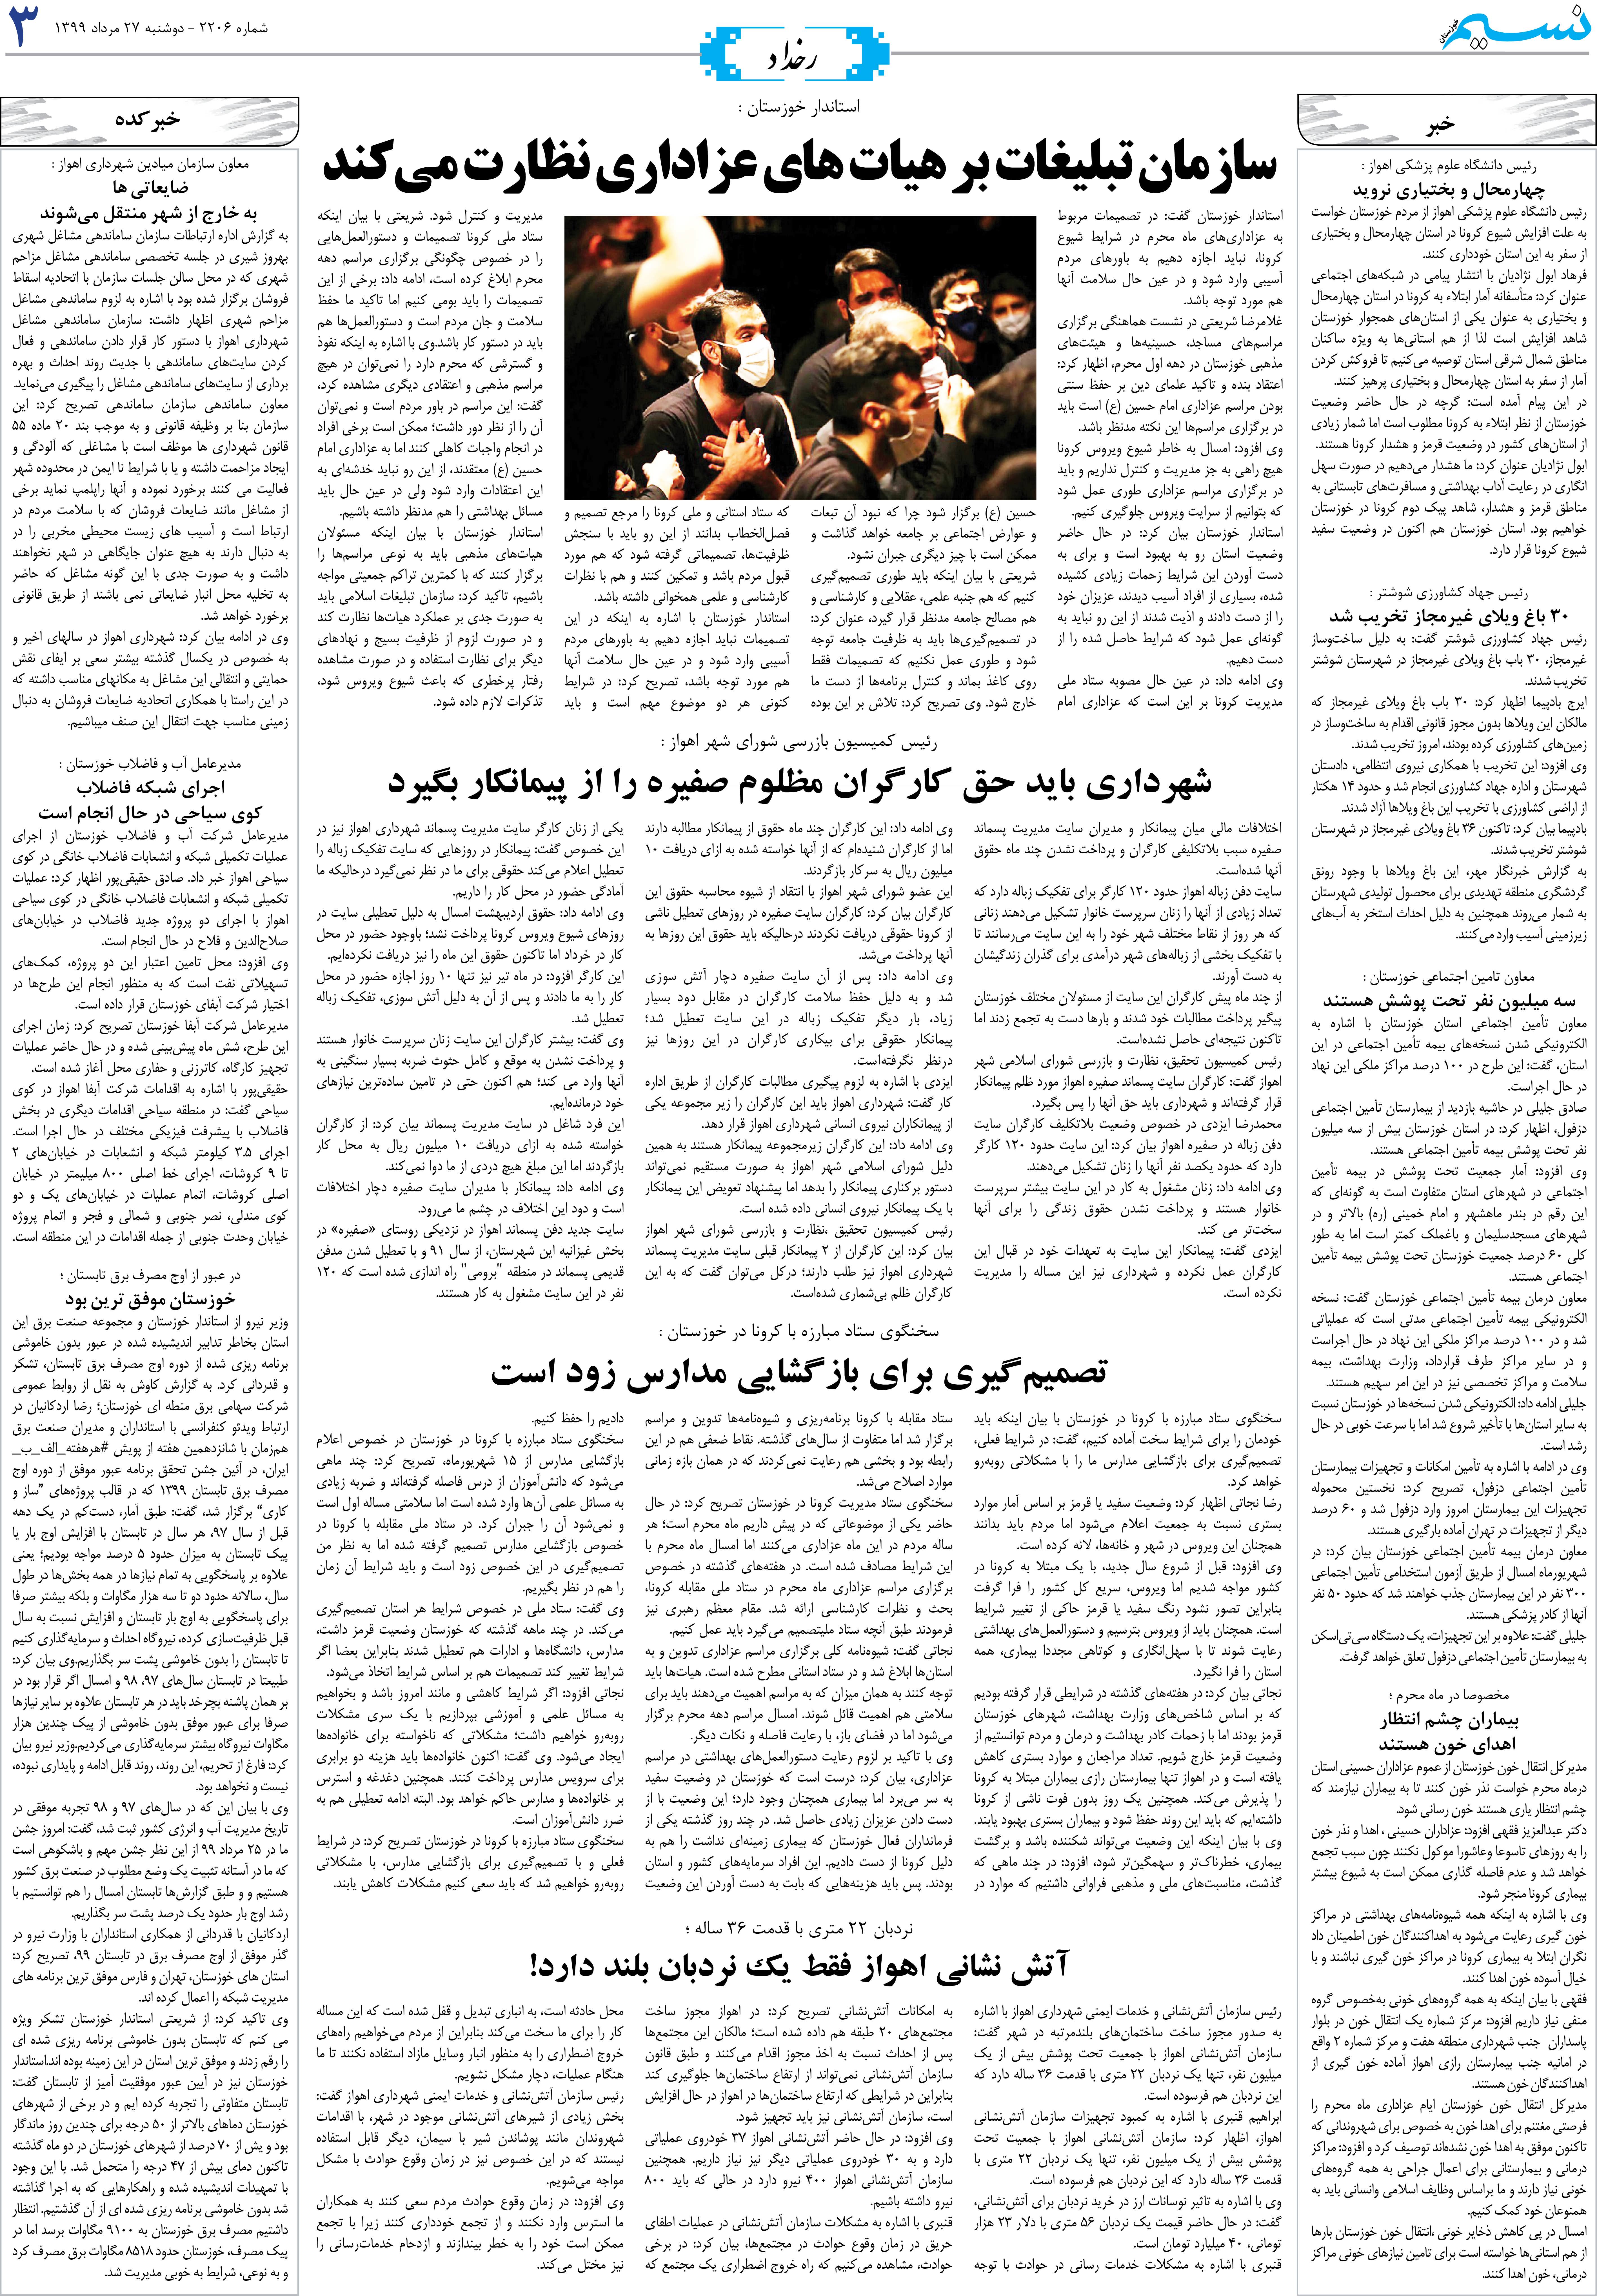 صفحه رخداد روزنامه نسیم شماره 2206